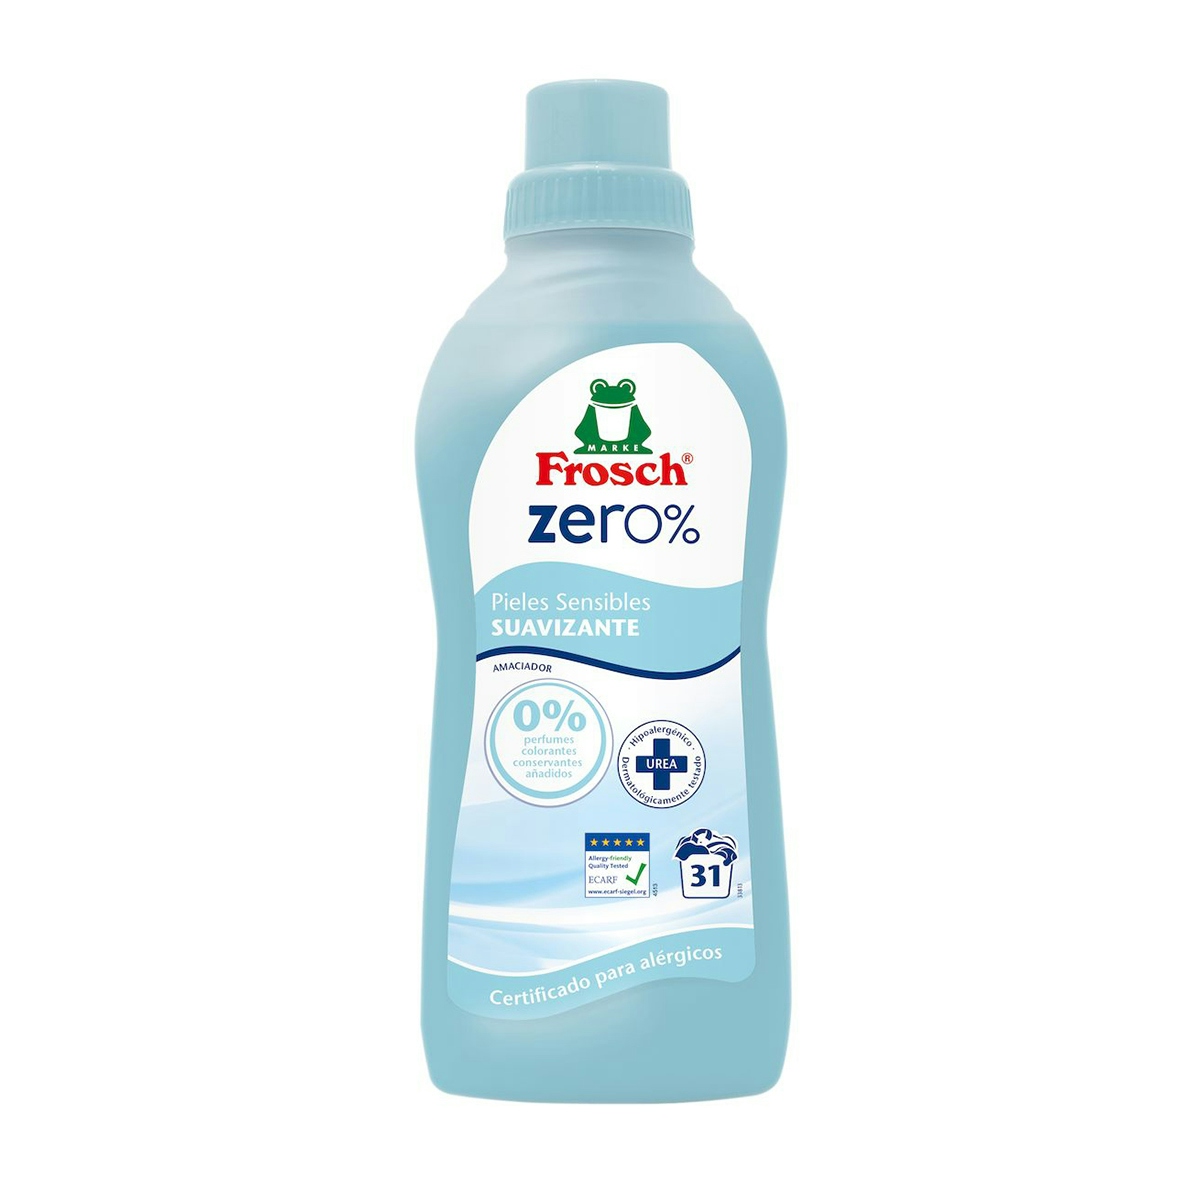 Frosch Zero suavizante concentrado pieles sensibles botella 31 lv